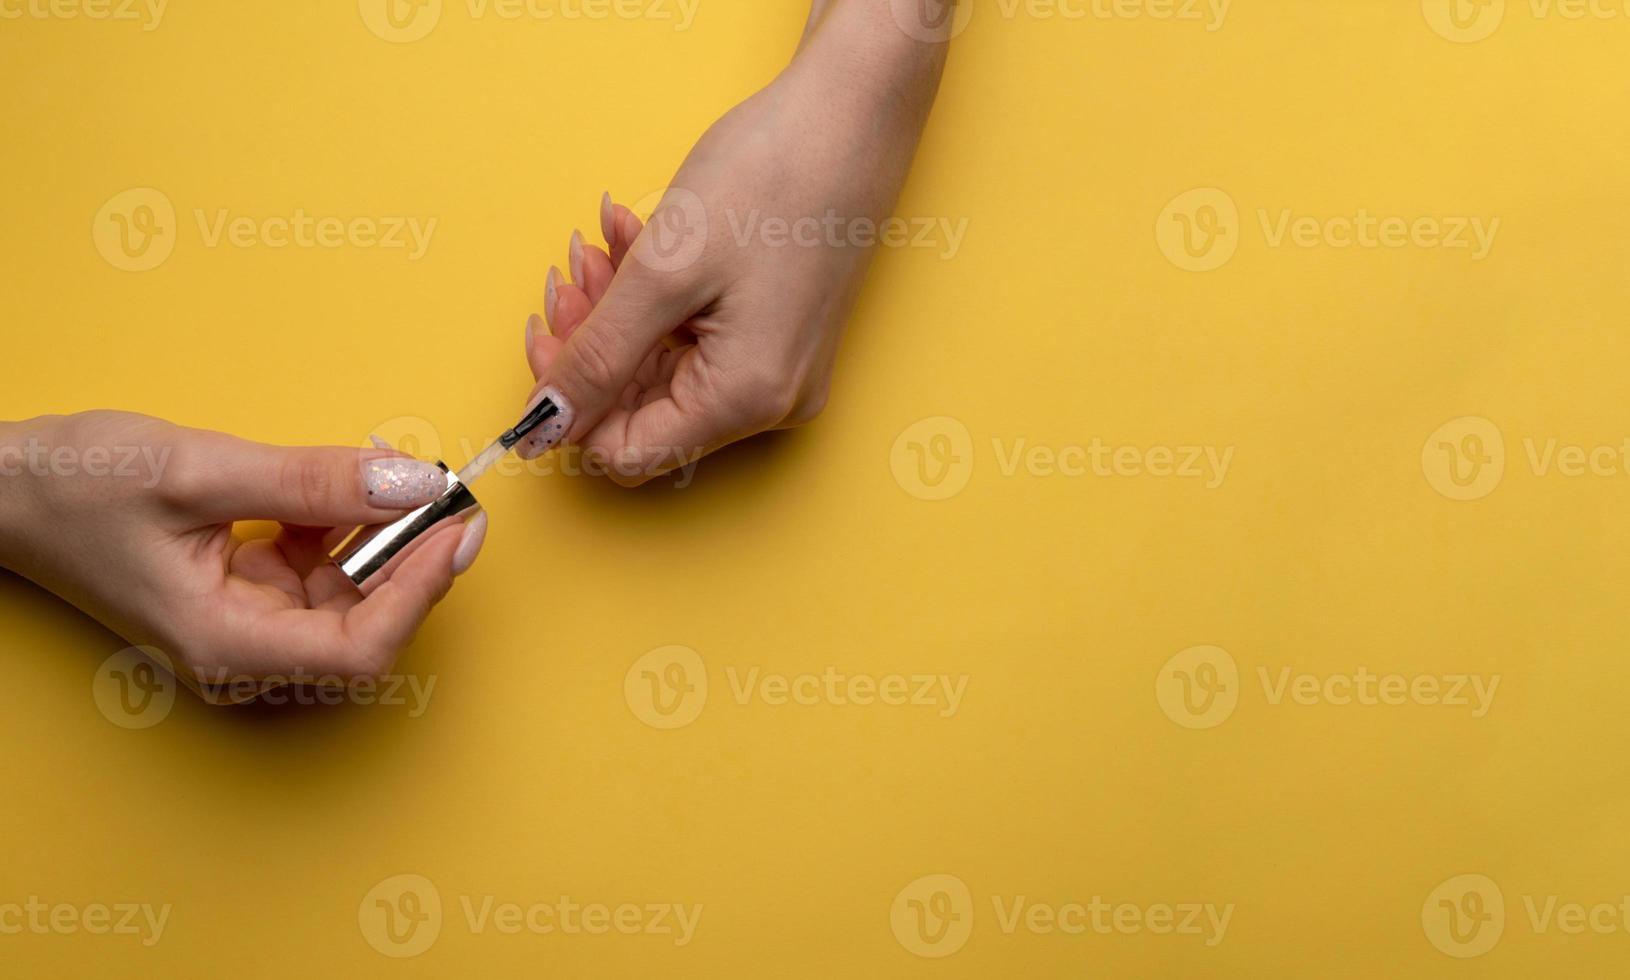 close-up de uma mulher pinta as unhas com laca em um fundo amarelo, vista superior foto